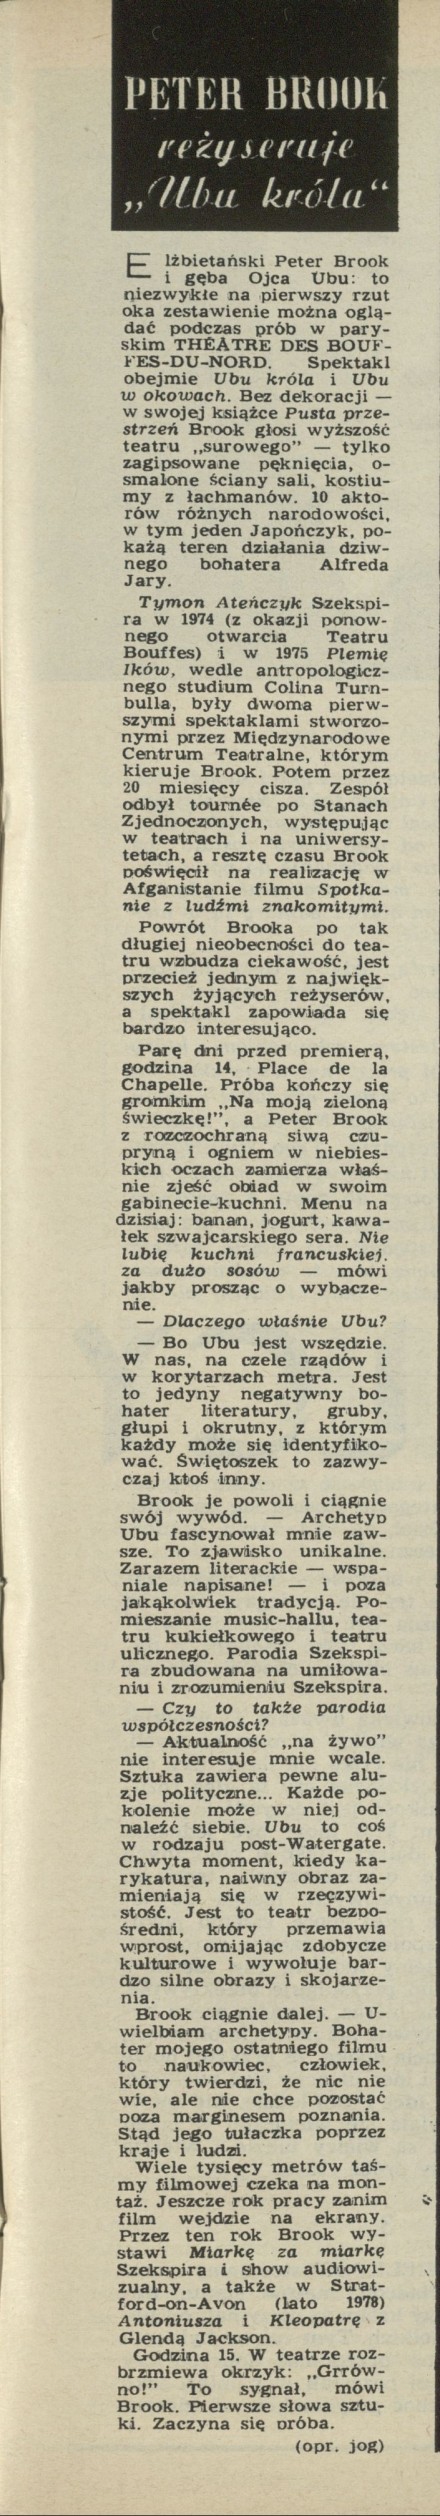 Peter Brook reżyseruje "Ubu króla"